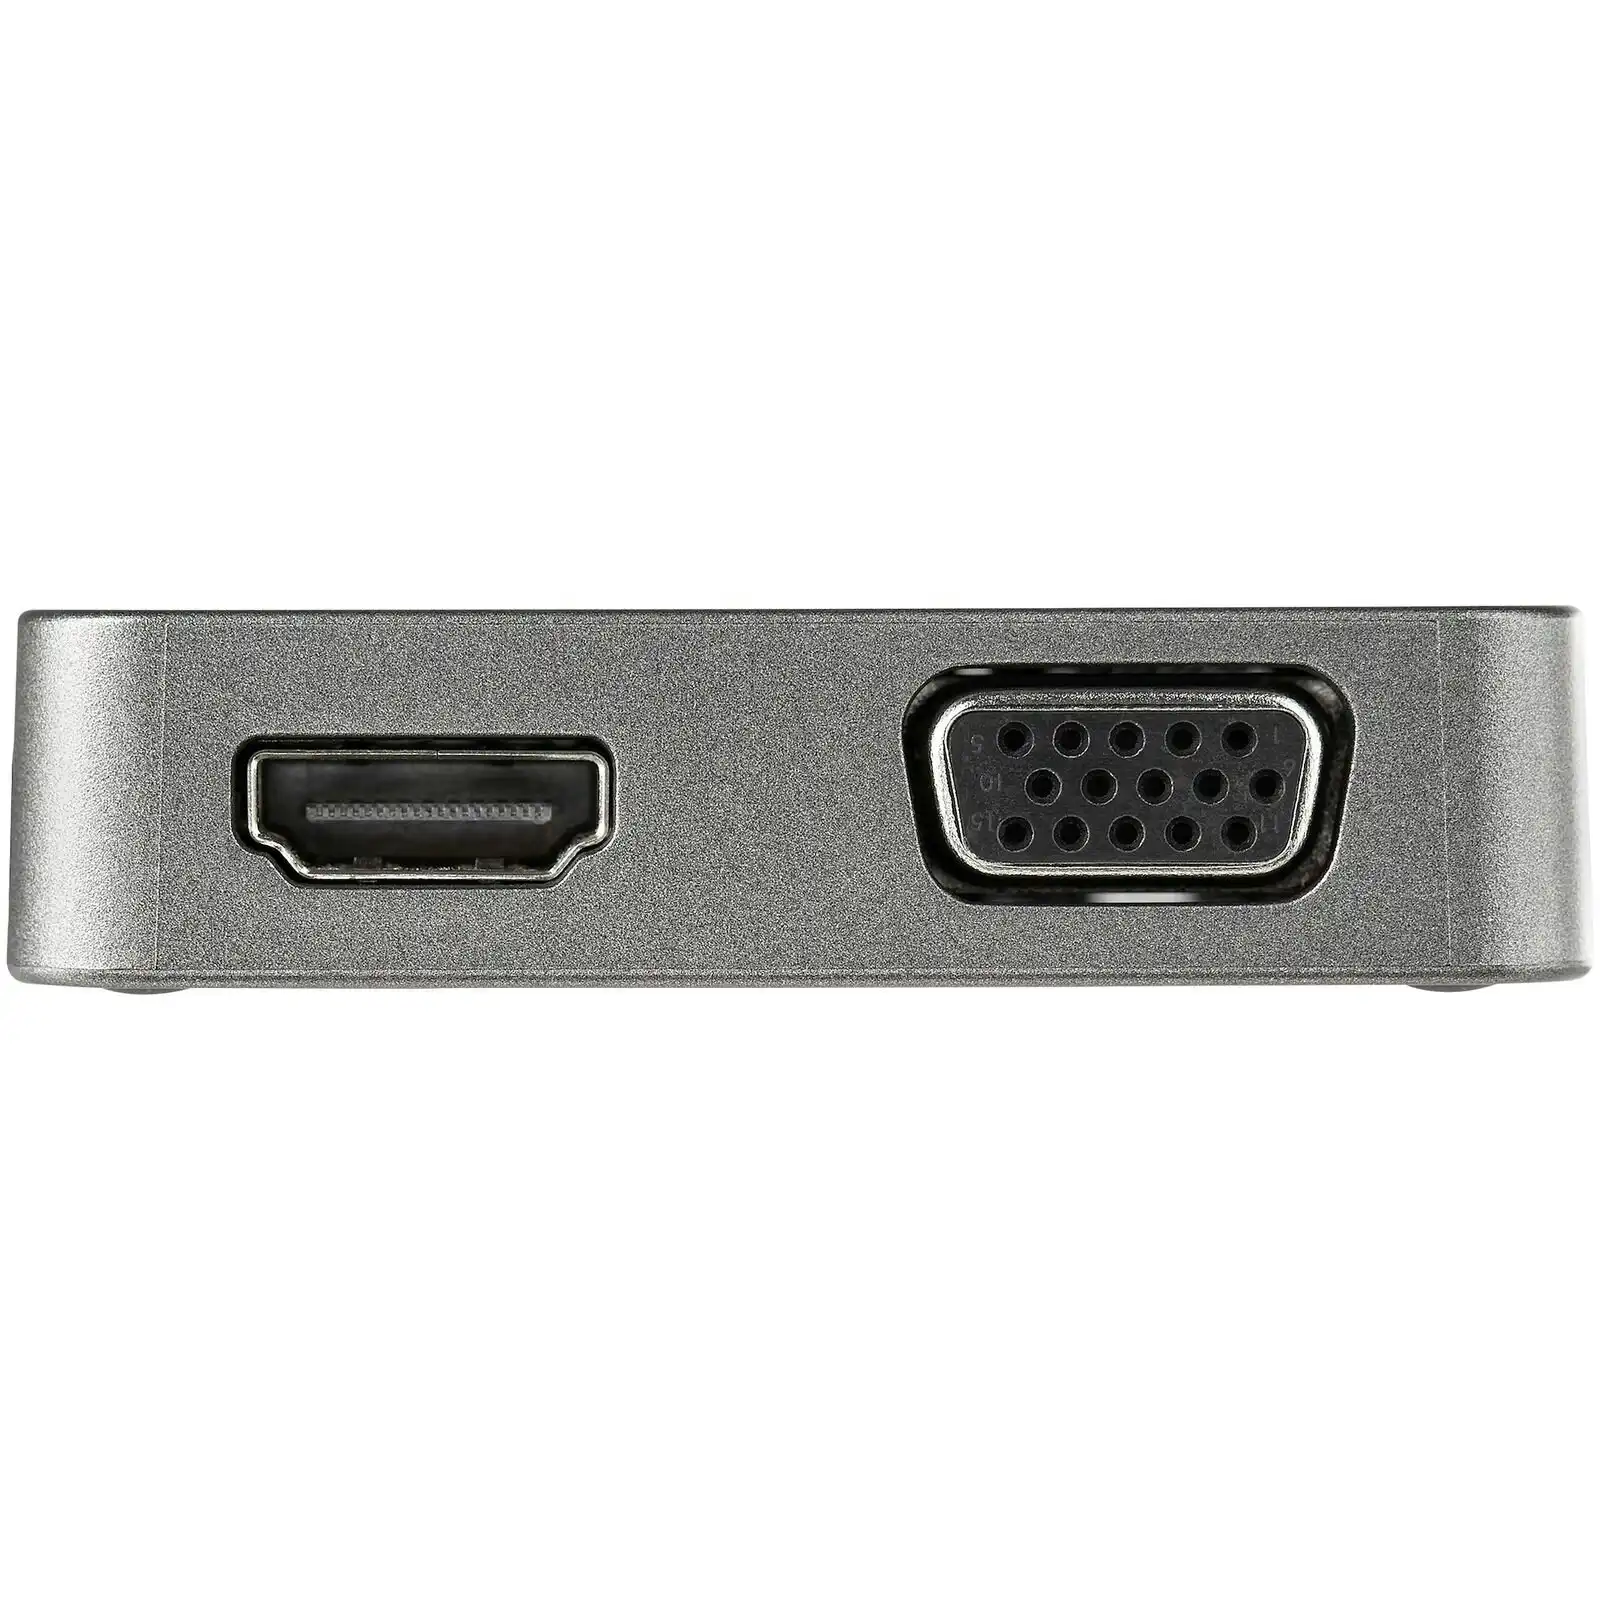 Star Tech Thunderbolt 3 USB-C to 4K HDMI/1080p VGA Video Adapter Gen 2 Hub 10G